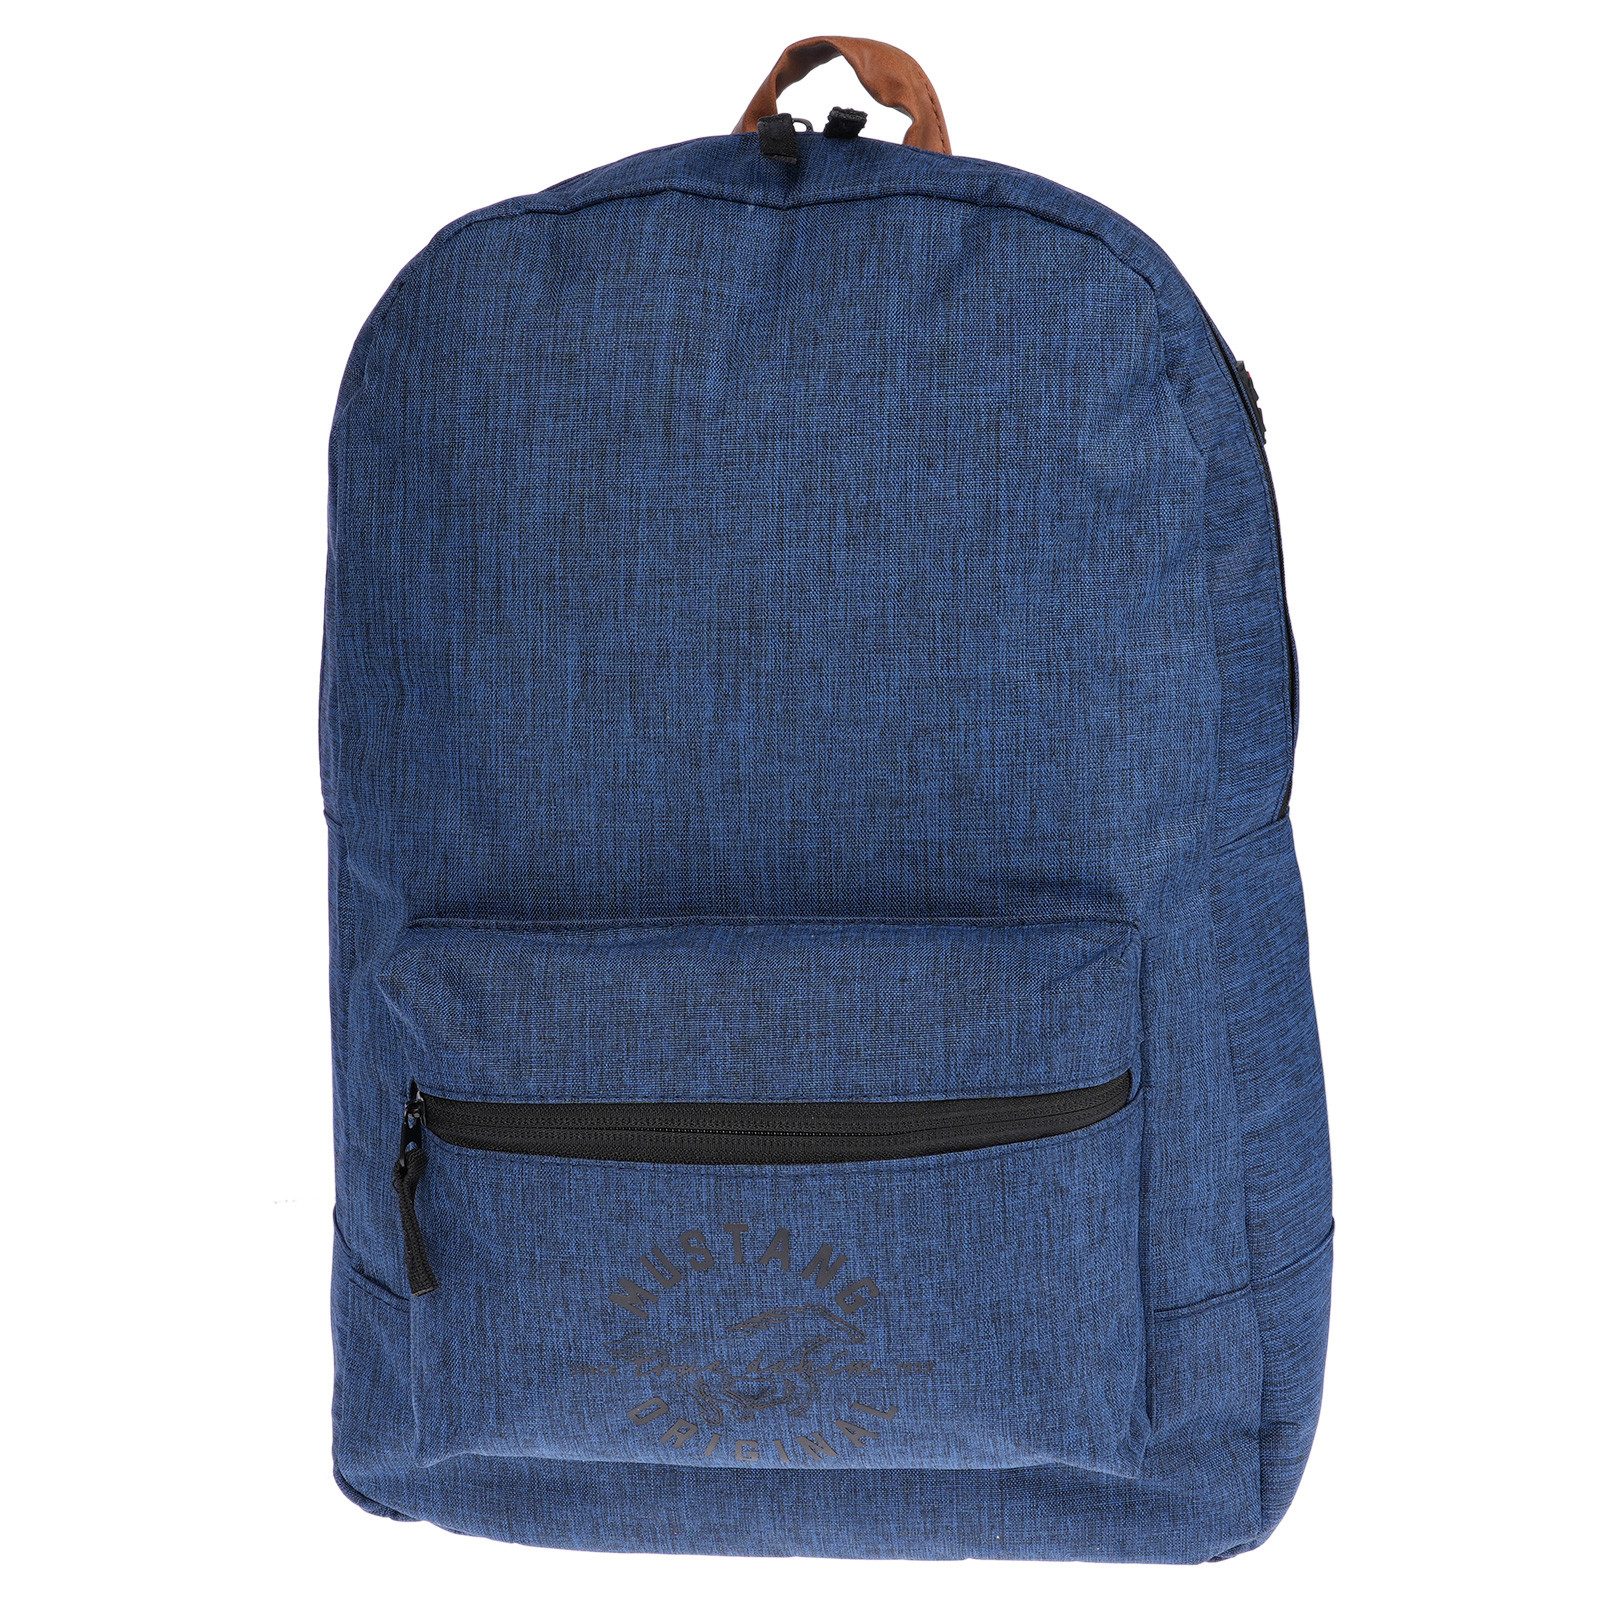 MUSTANG Сумки для покупок Mustang Rucksack Backpack Blau, wasserabweisend